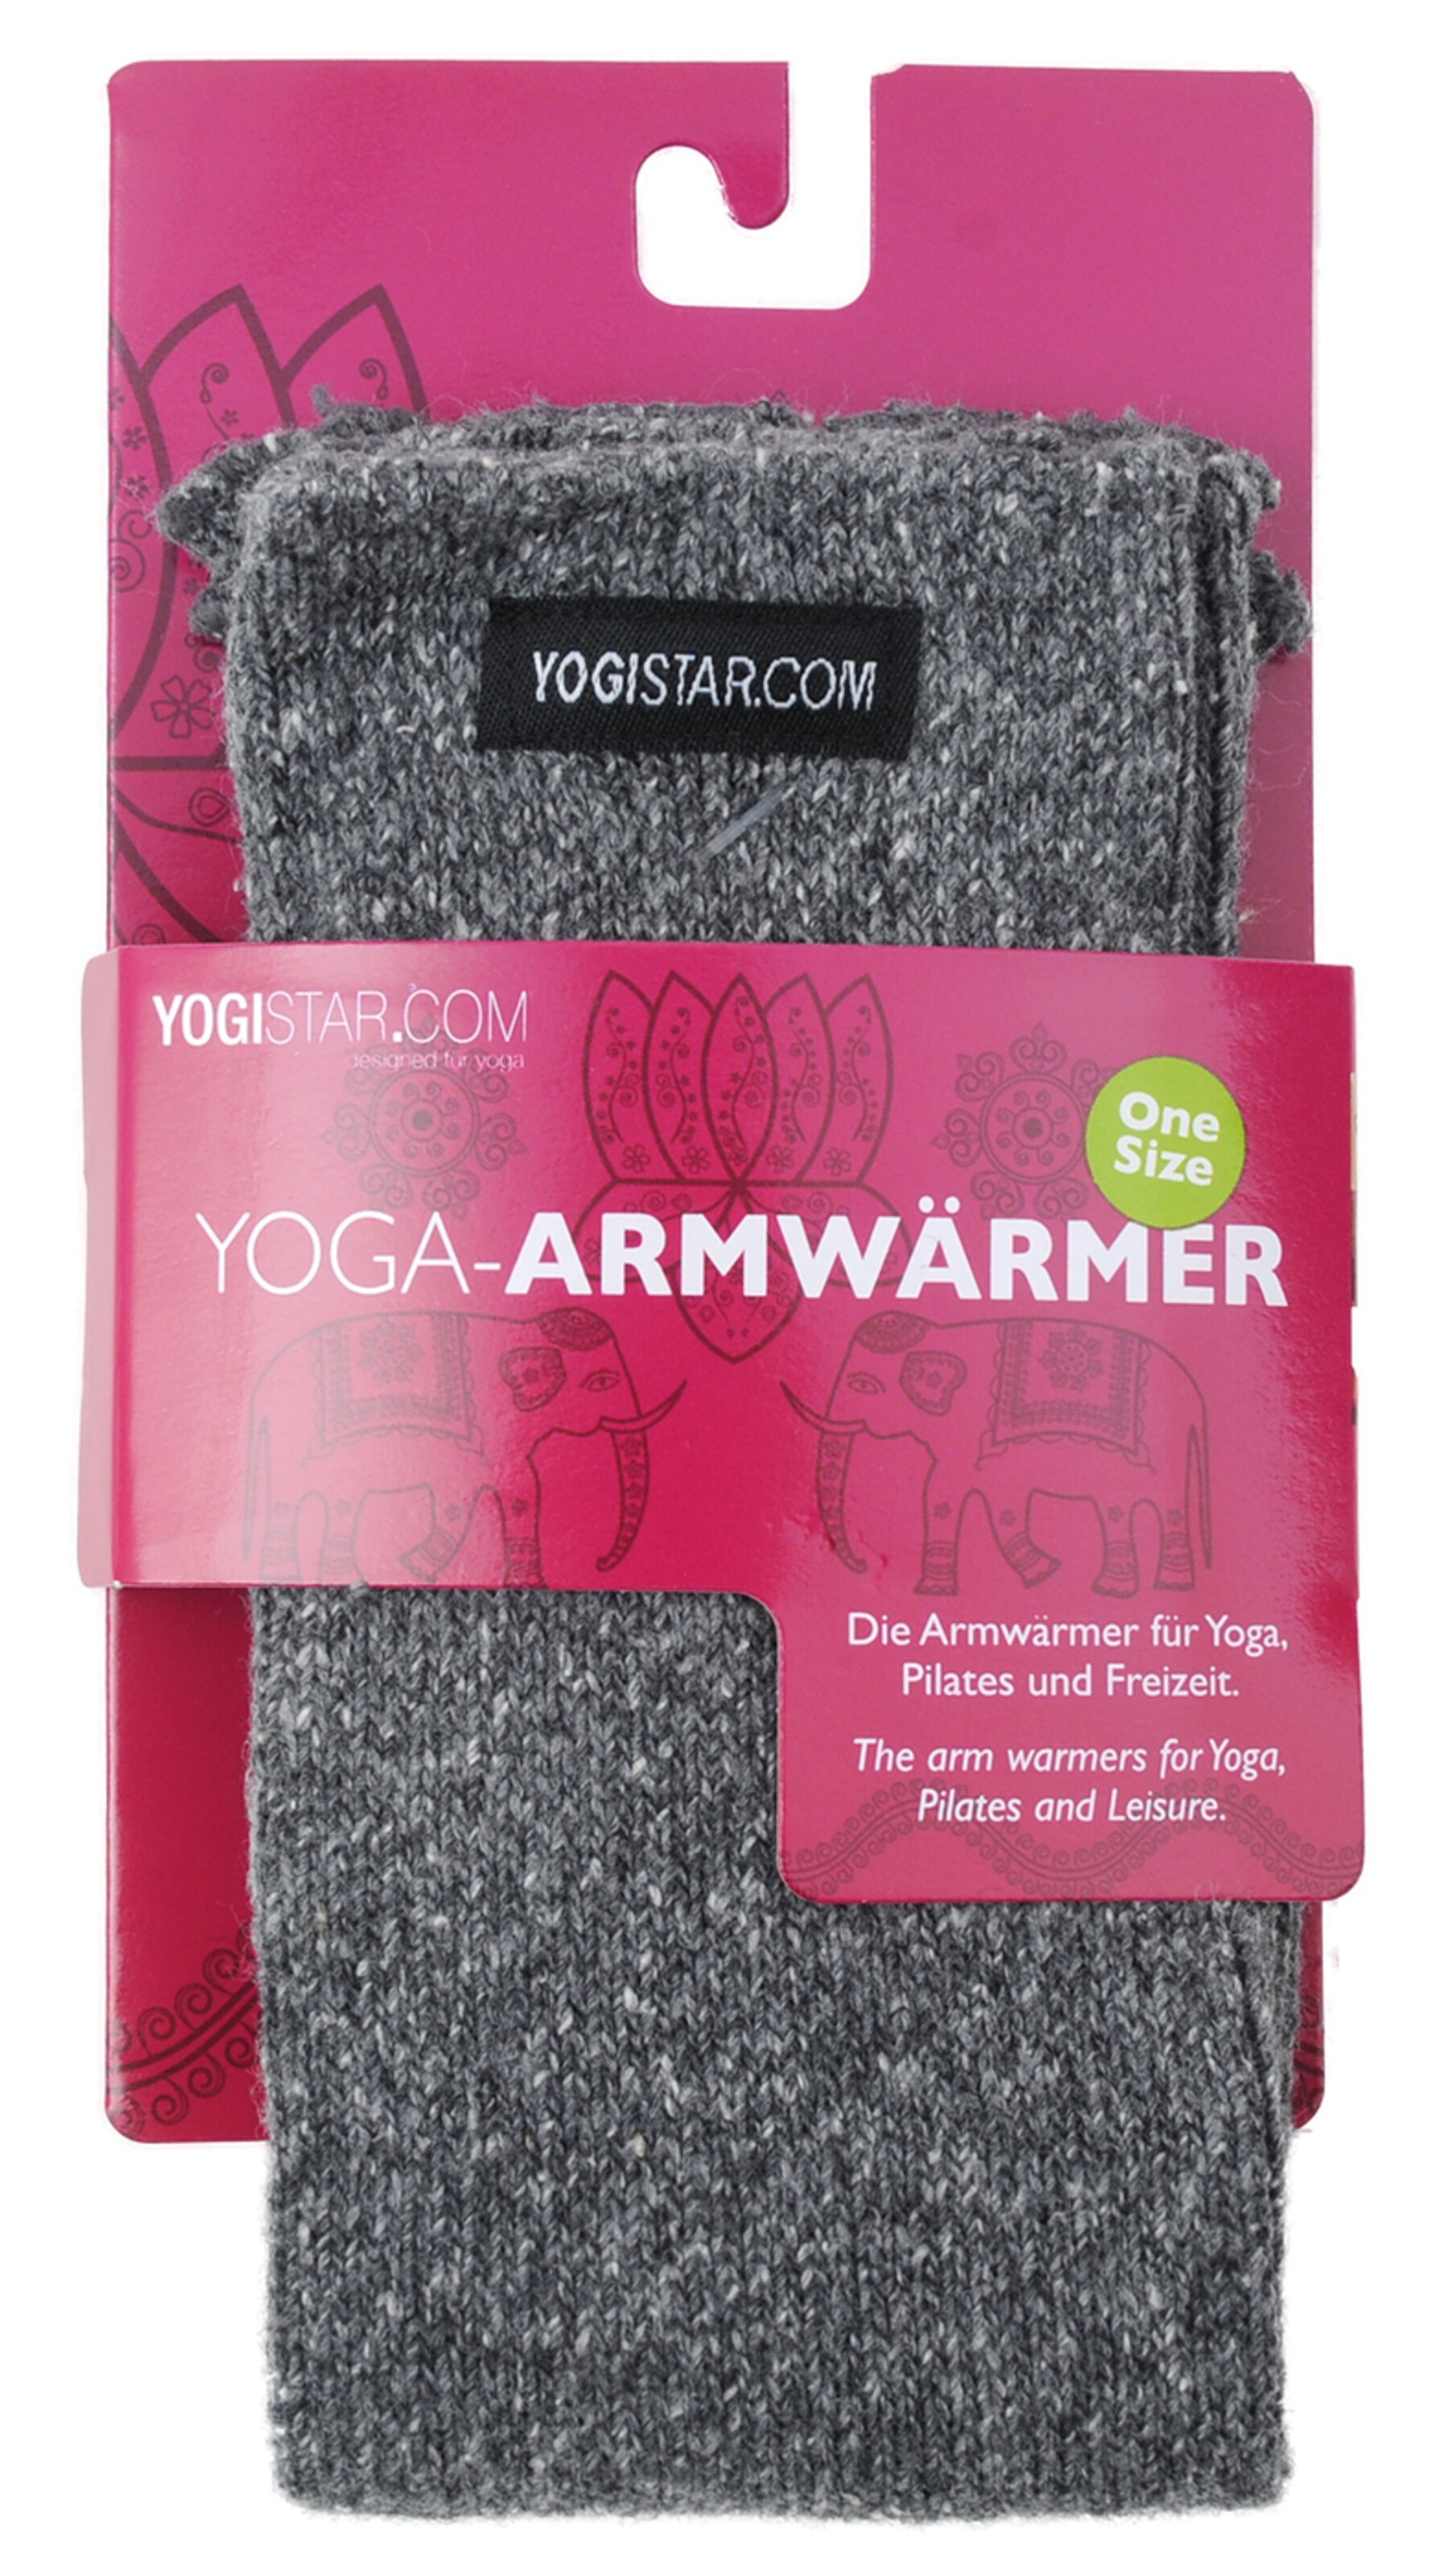 YOGISTAR.COM Yoga Armwärmer in Grau 